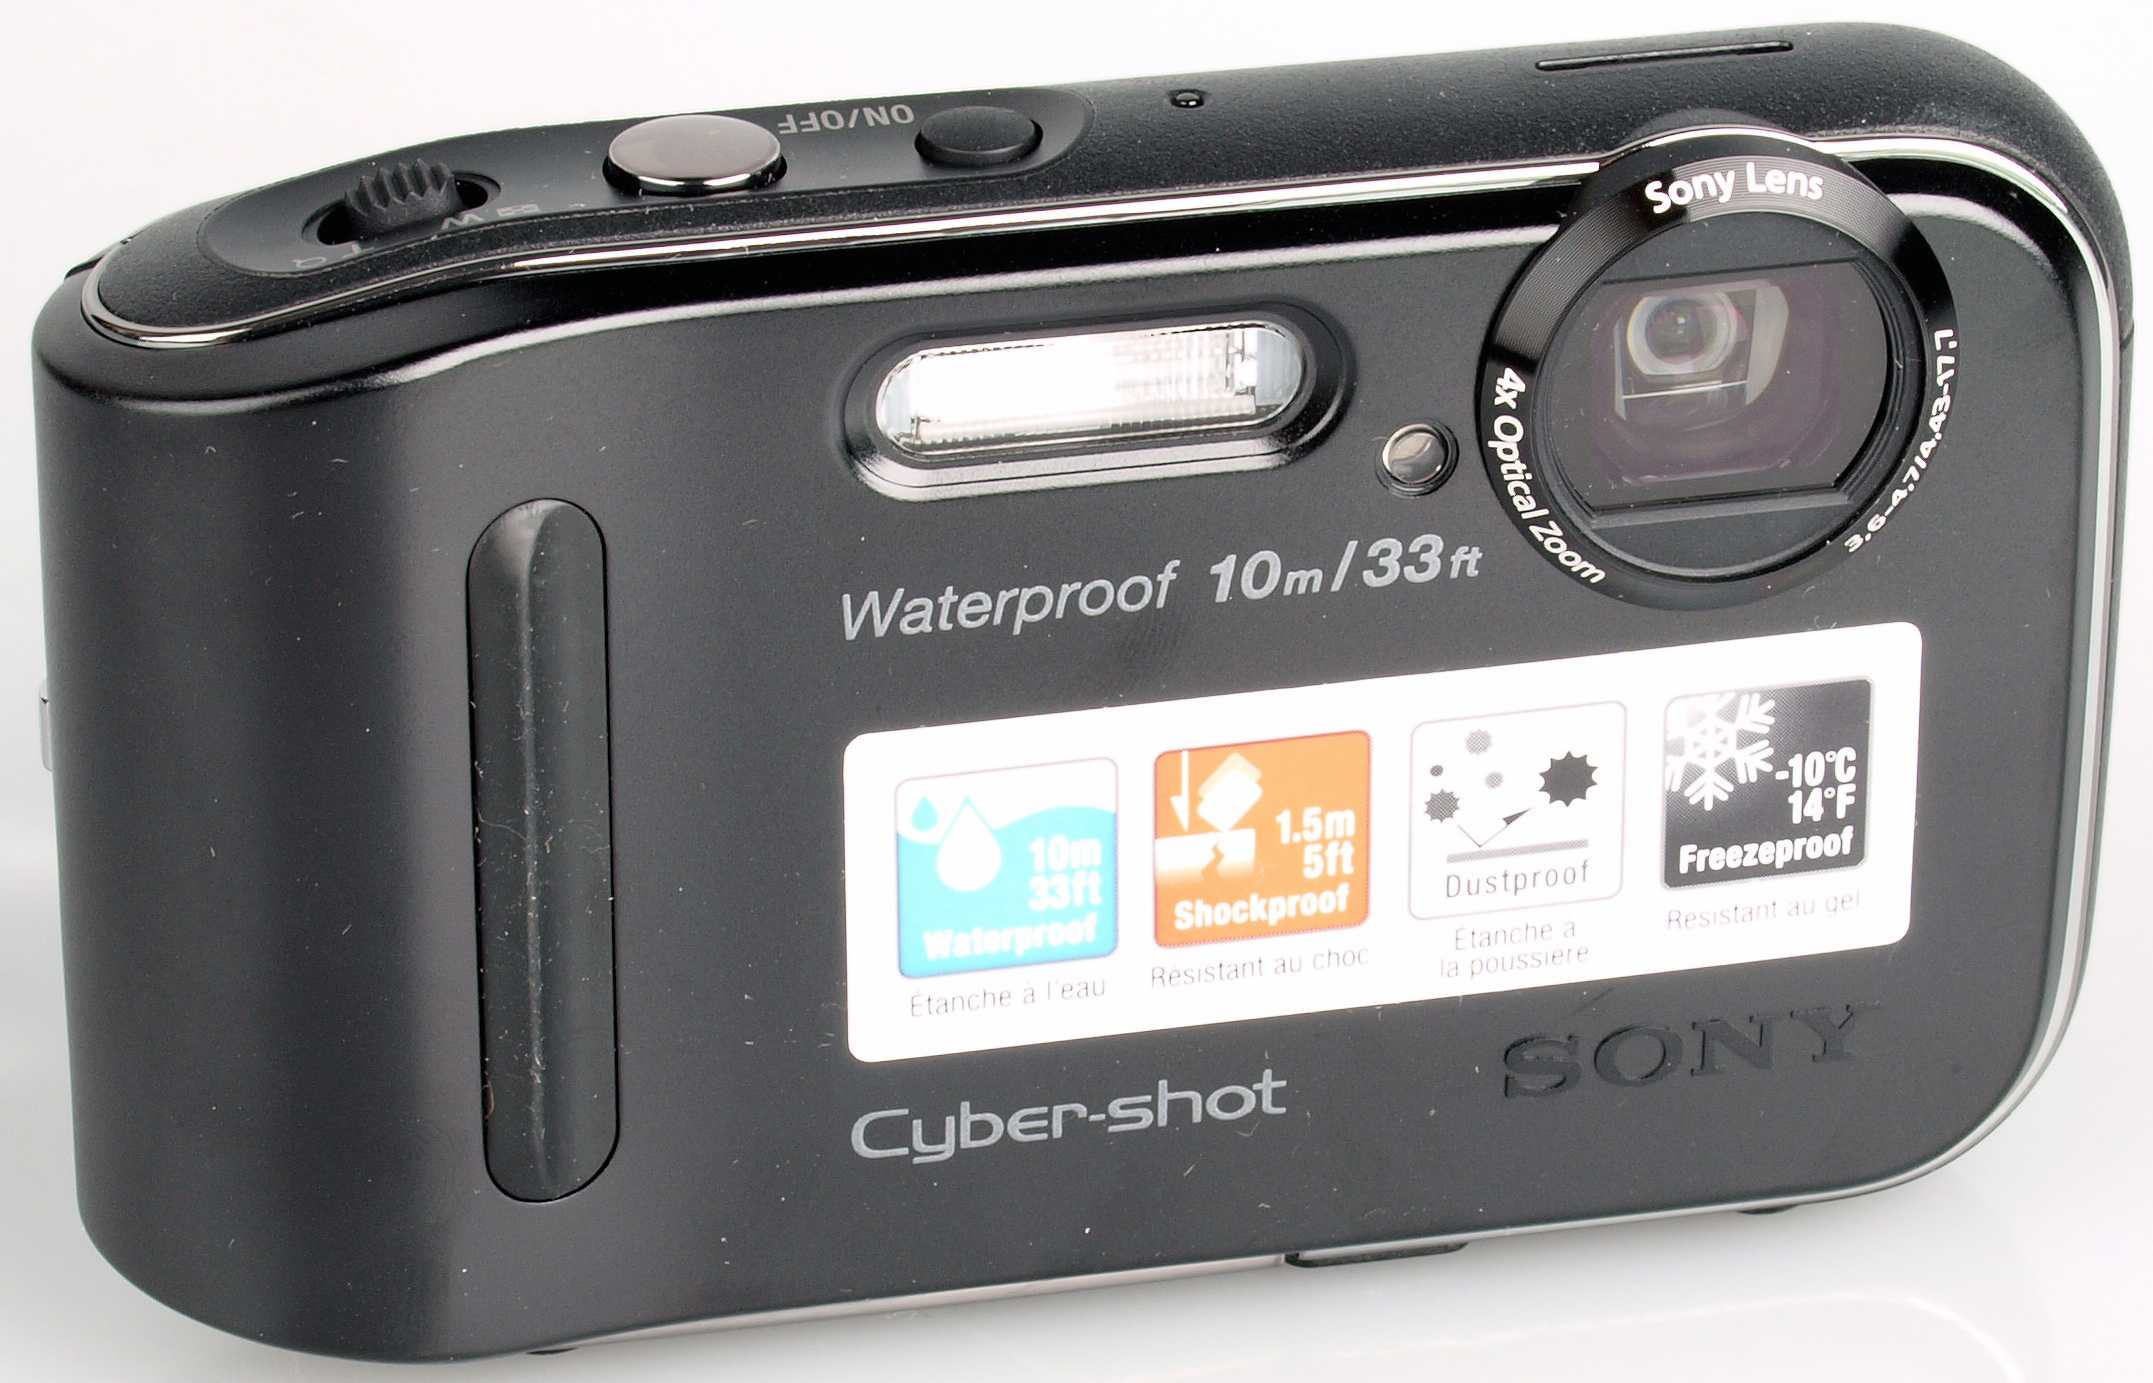 Цифровой фотоаппарат Sony DSC-TF1 - подробные характеристики обзоры видео фото Цены в интернет-магазинах где можно купить цифровую фотоаппарат Sony DSC-TF1